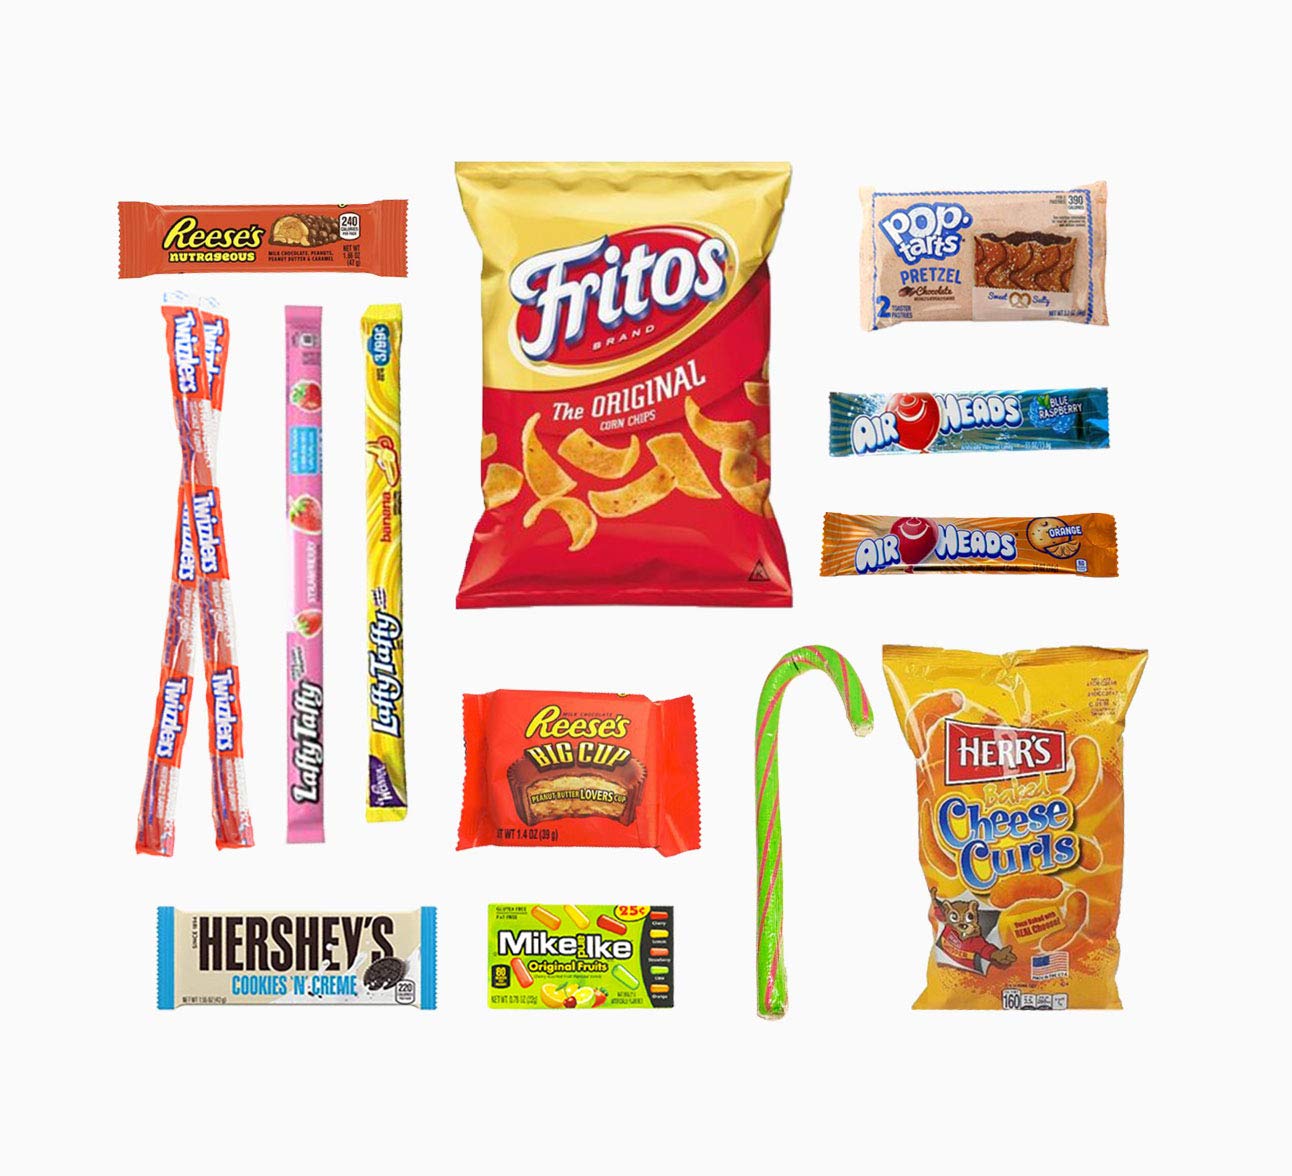 USA Süßigkeiten und Snack Box - 14 typische Süßigkeiten und Snack aus den USA - Twinkies, Reeses, Pop-Tarts und viele andere Leckereien